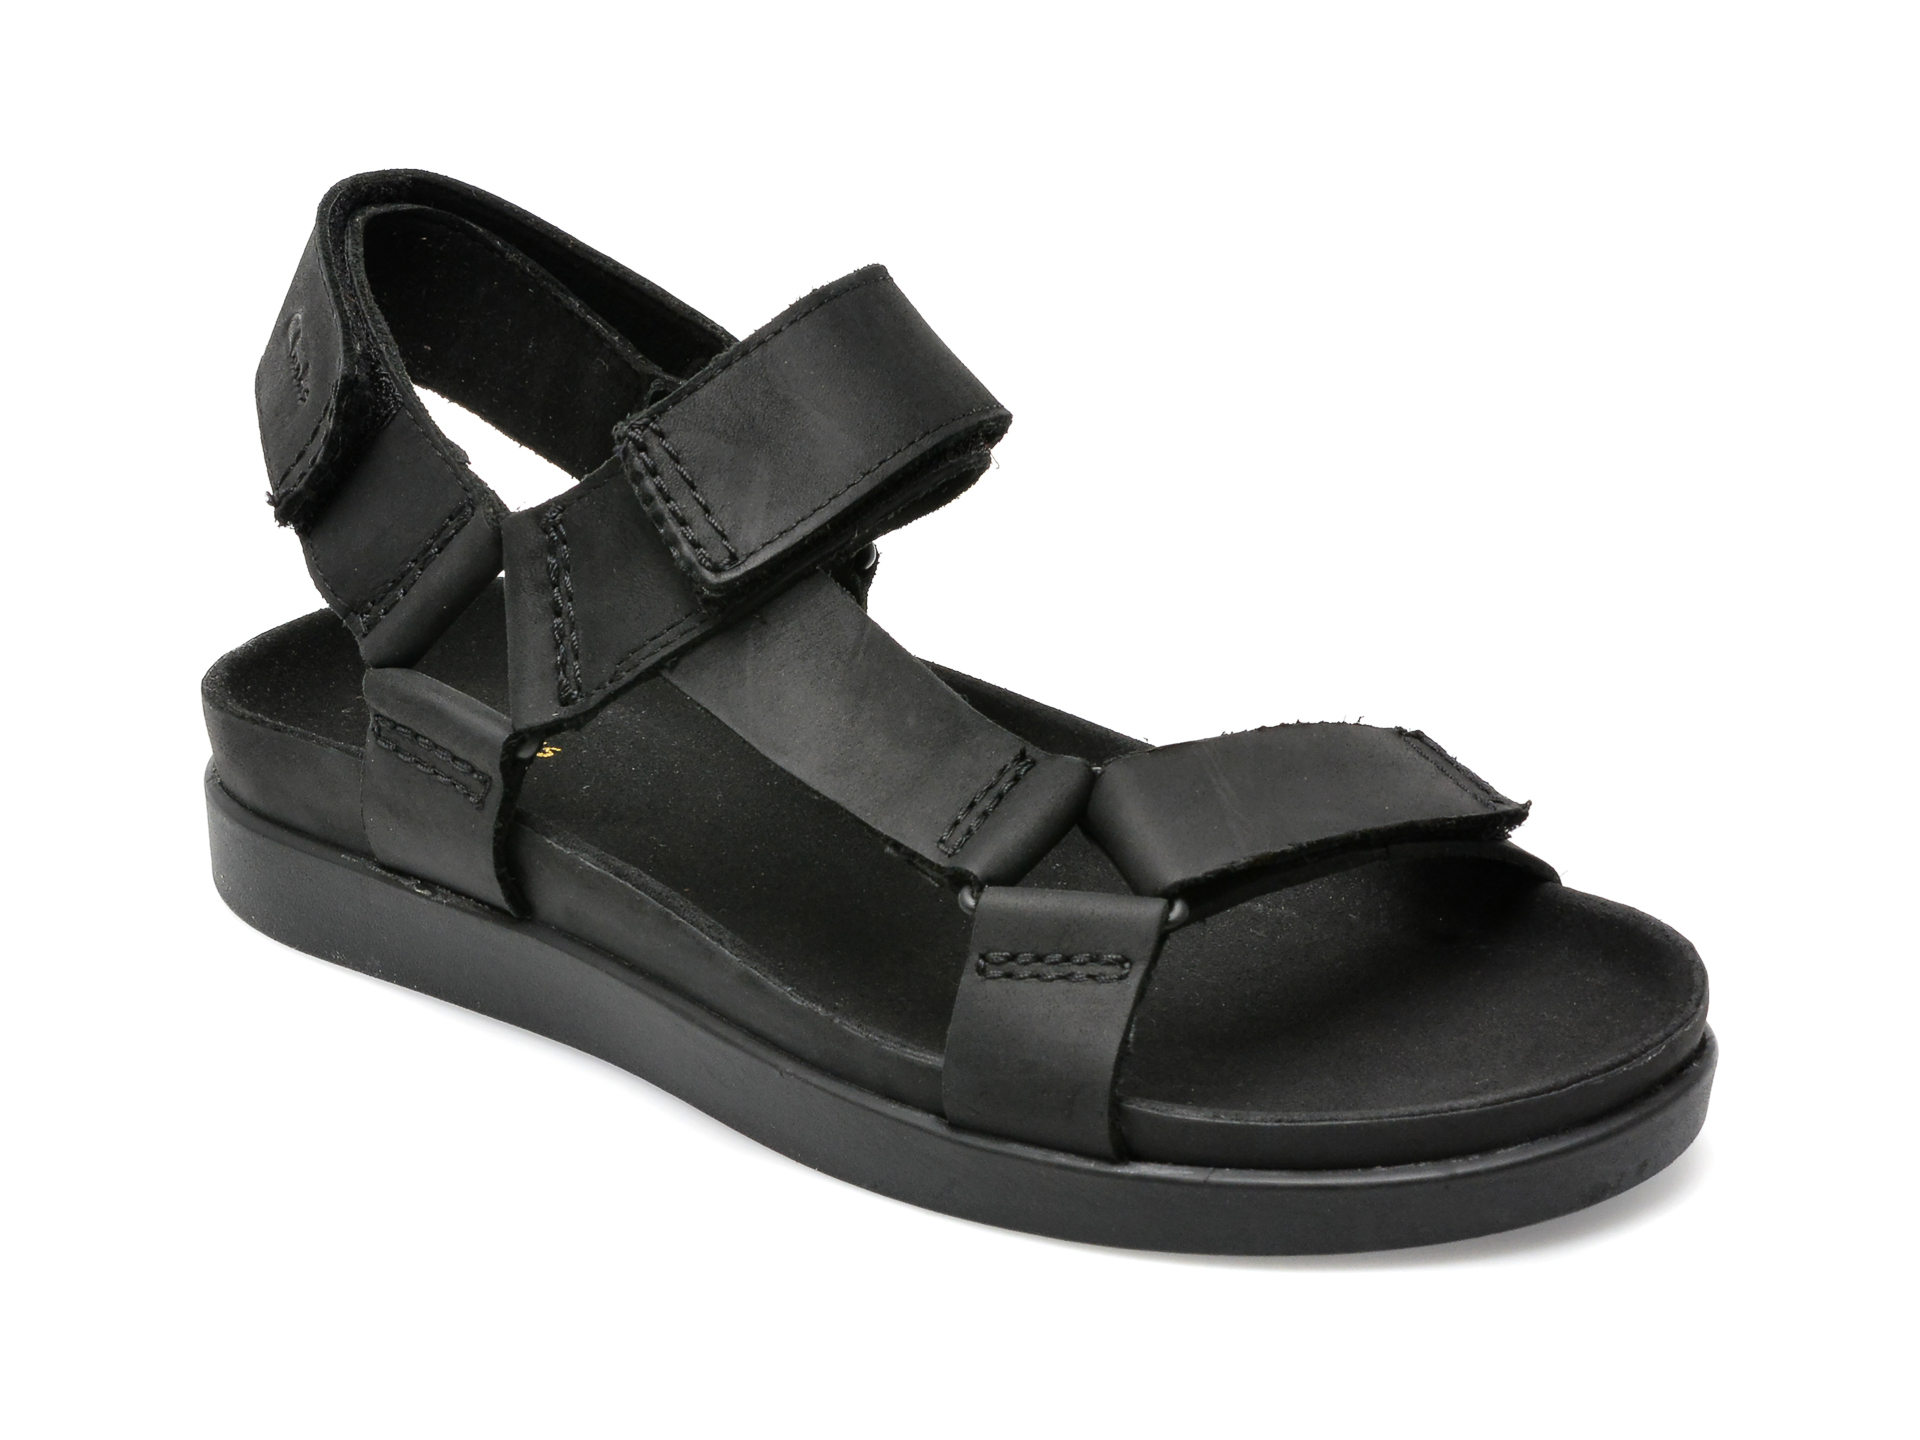 Sandale CLARKS negre, SUNDER RANGE 01-N, din piele naturala barbati 2023-03-21